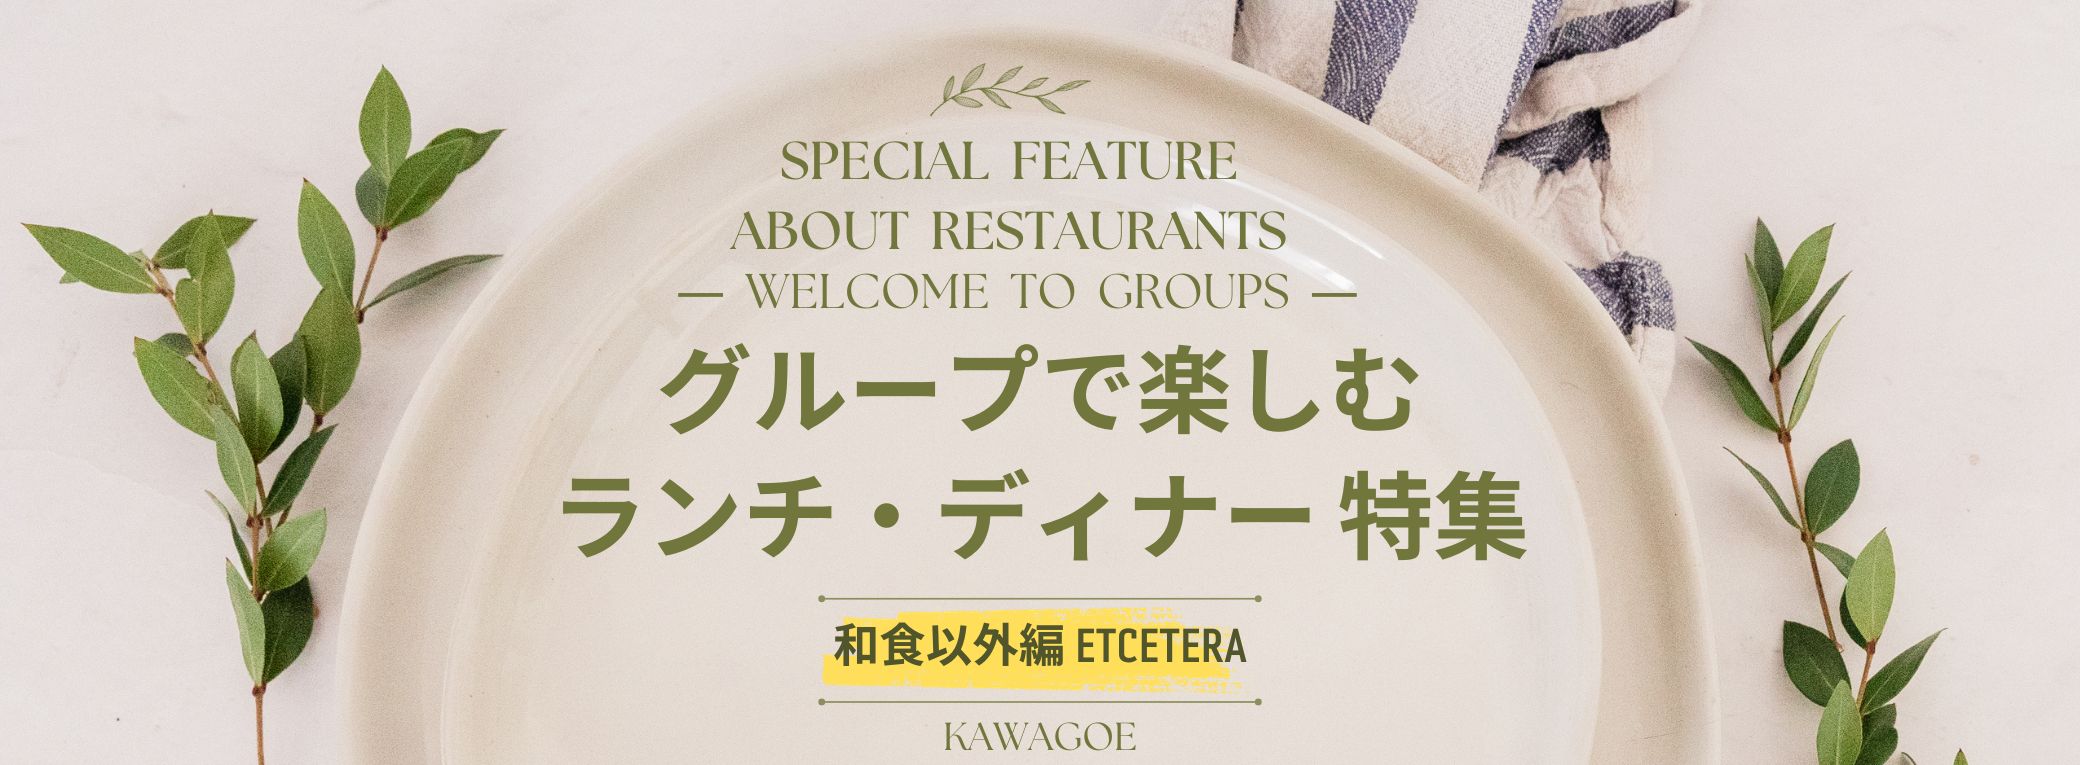 🍴Almoço e jantar especiais para grupos - edição de comida não japonesa - 🎉